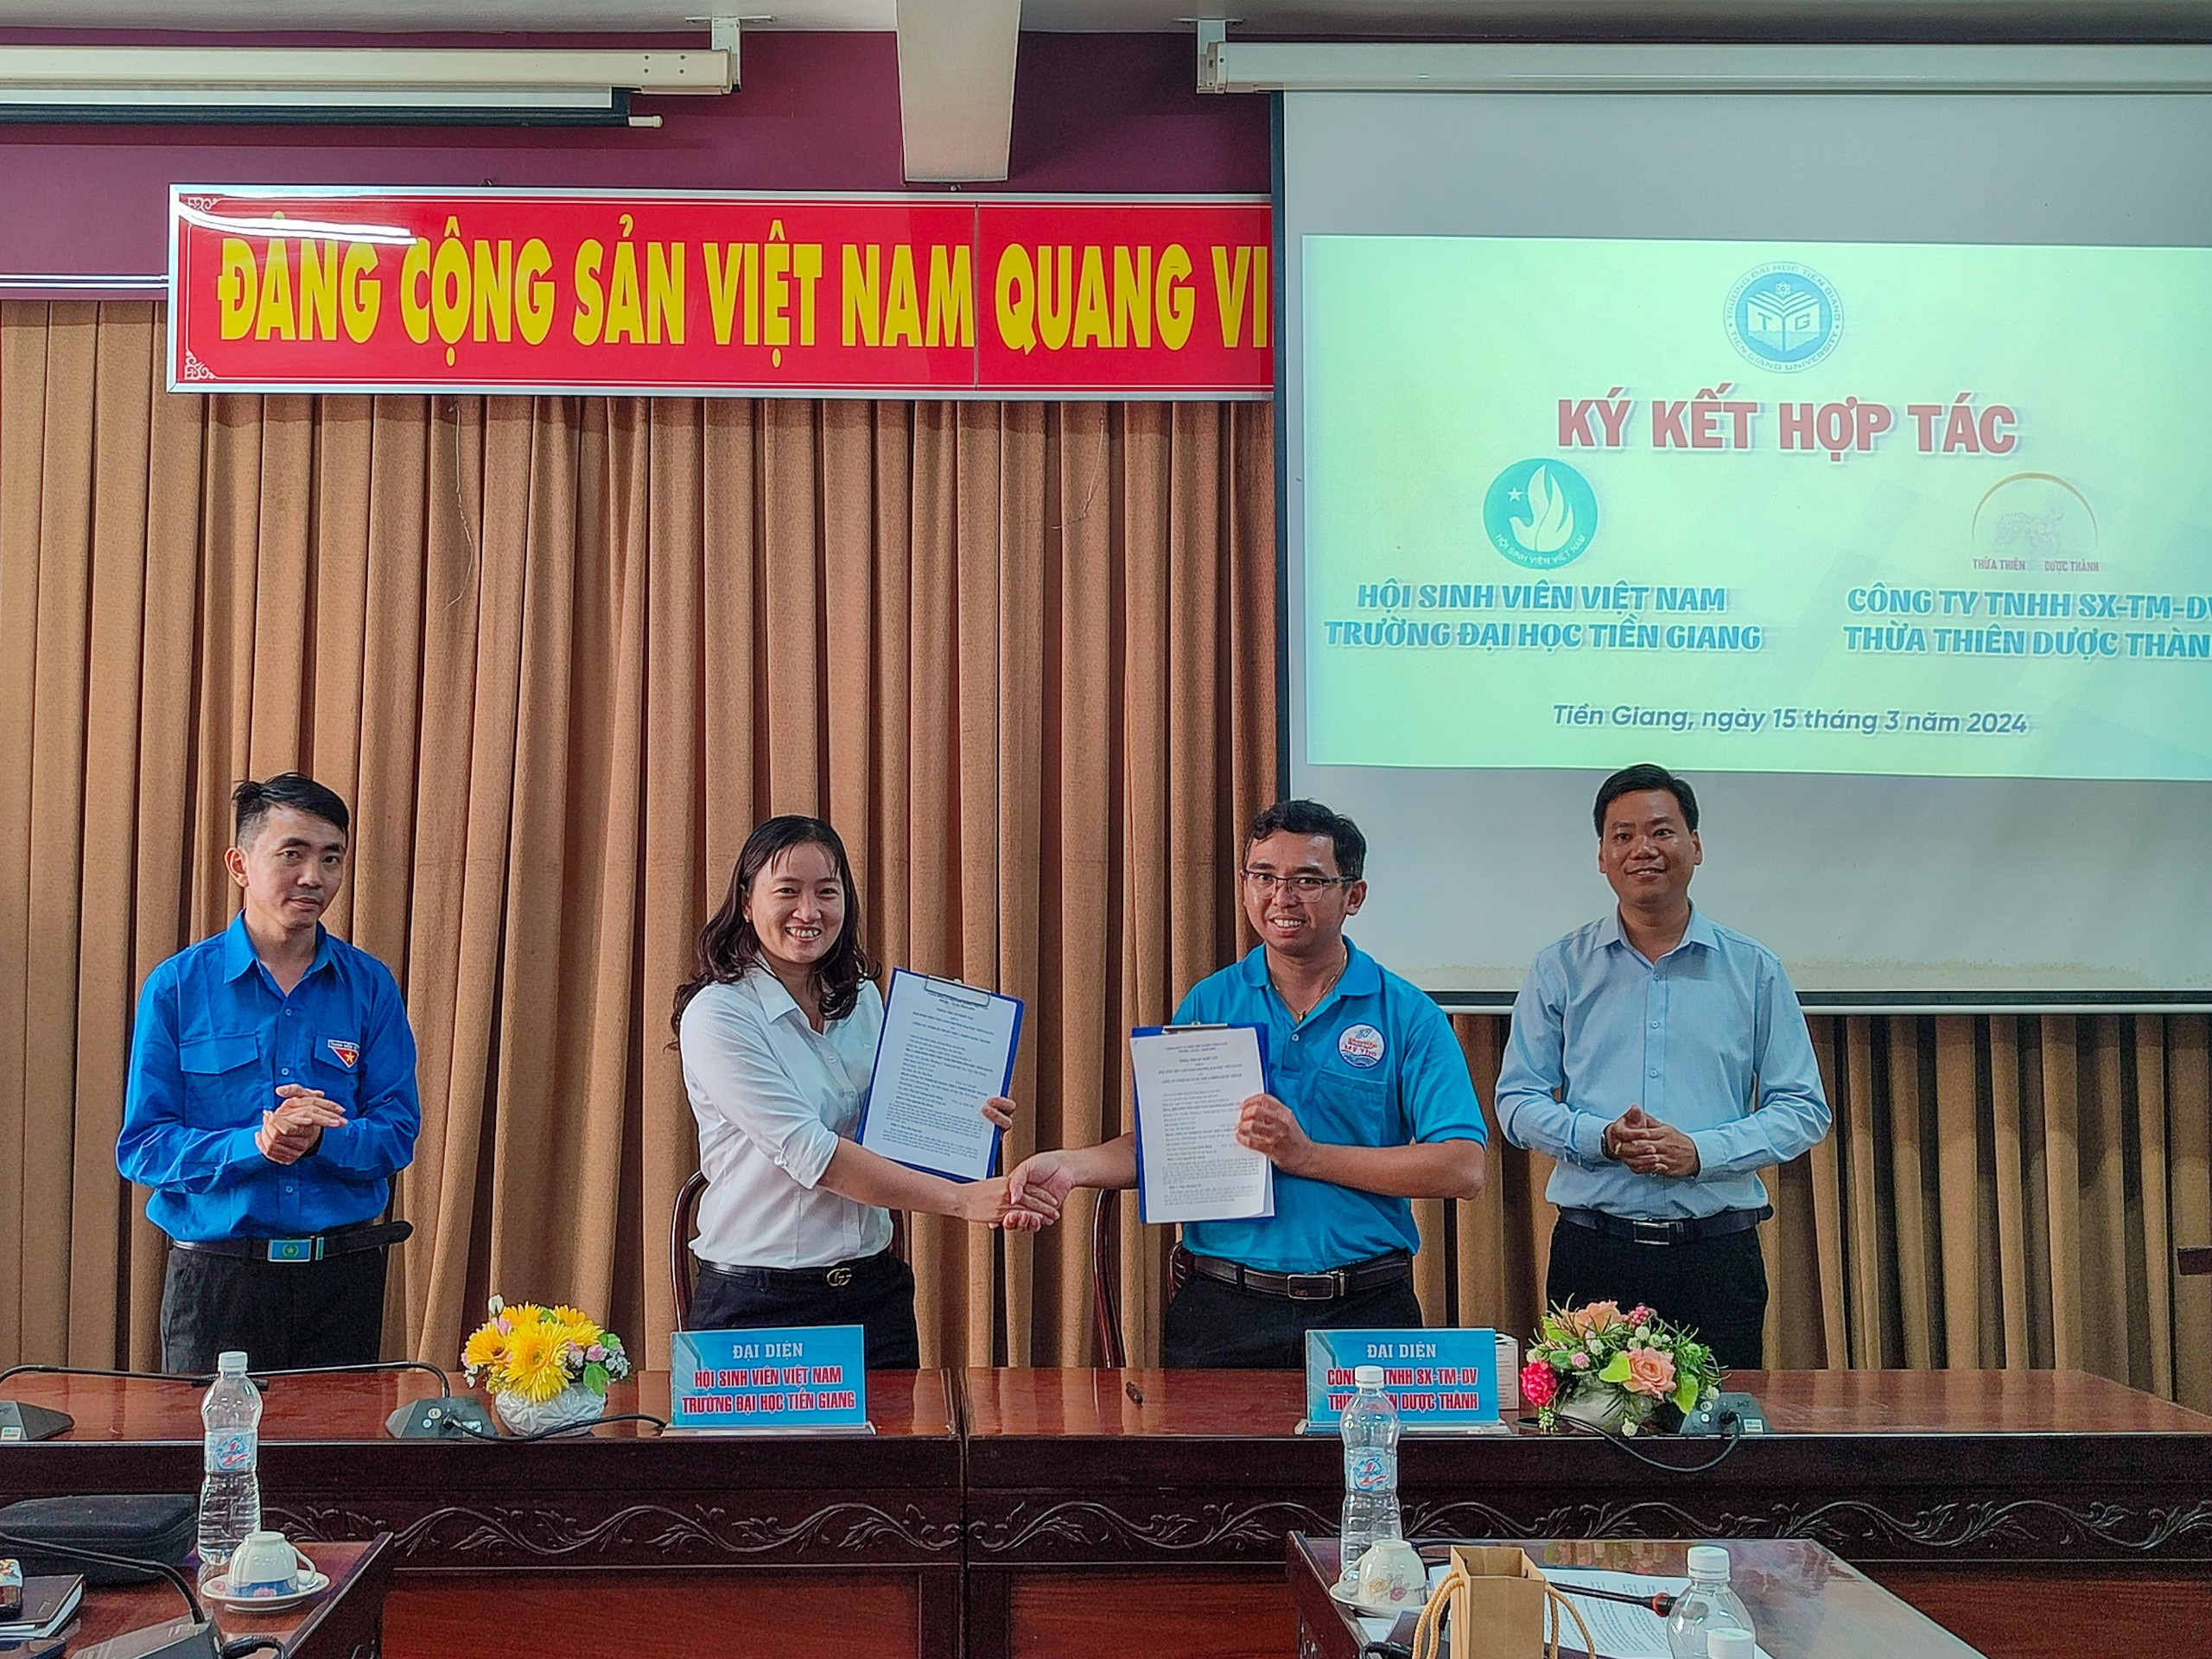 Hội Sinh viên Việt Nam Trường Đại học Tiền Giang ký kết hợp tác với doanh nghiệp